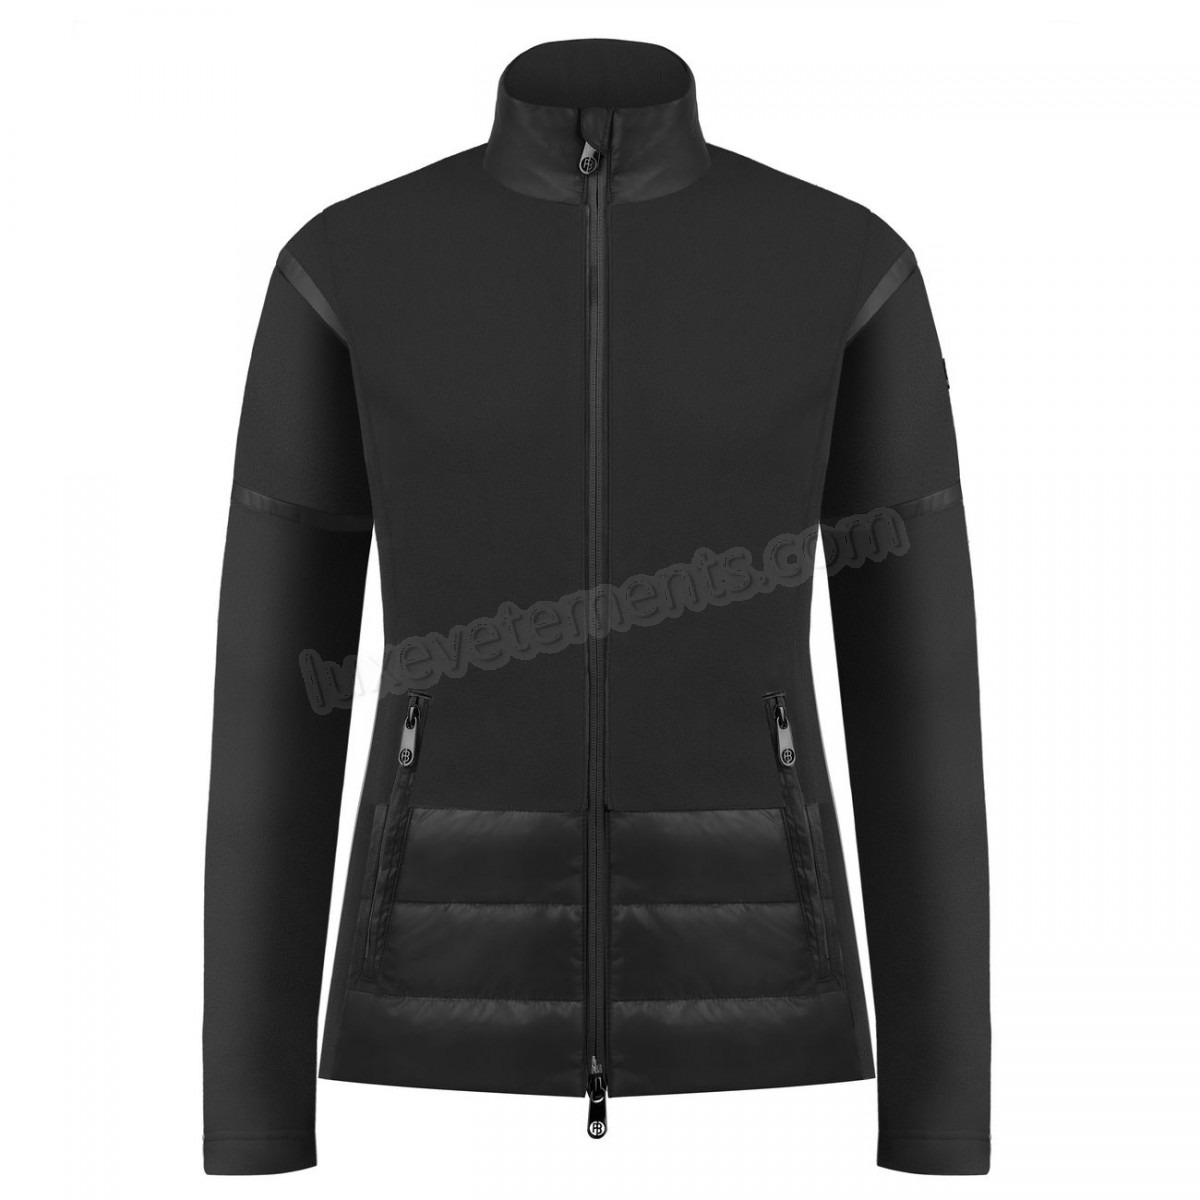 Poivre Blanc-Sports d'hiver femme POIVRE BLANC Veste Polaire Poivre Blanc Hybrid Fleece Jacket 1601 Black Femme Vente en ligne - -0